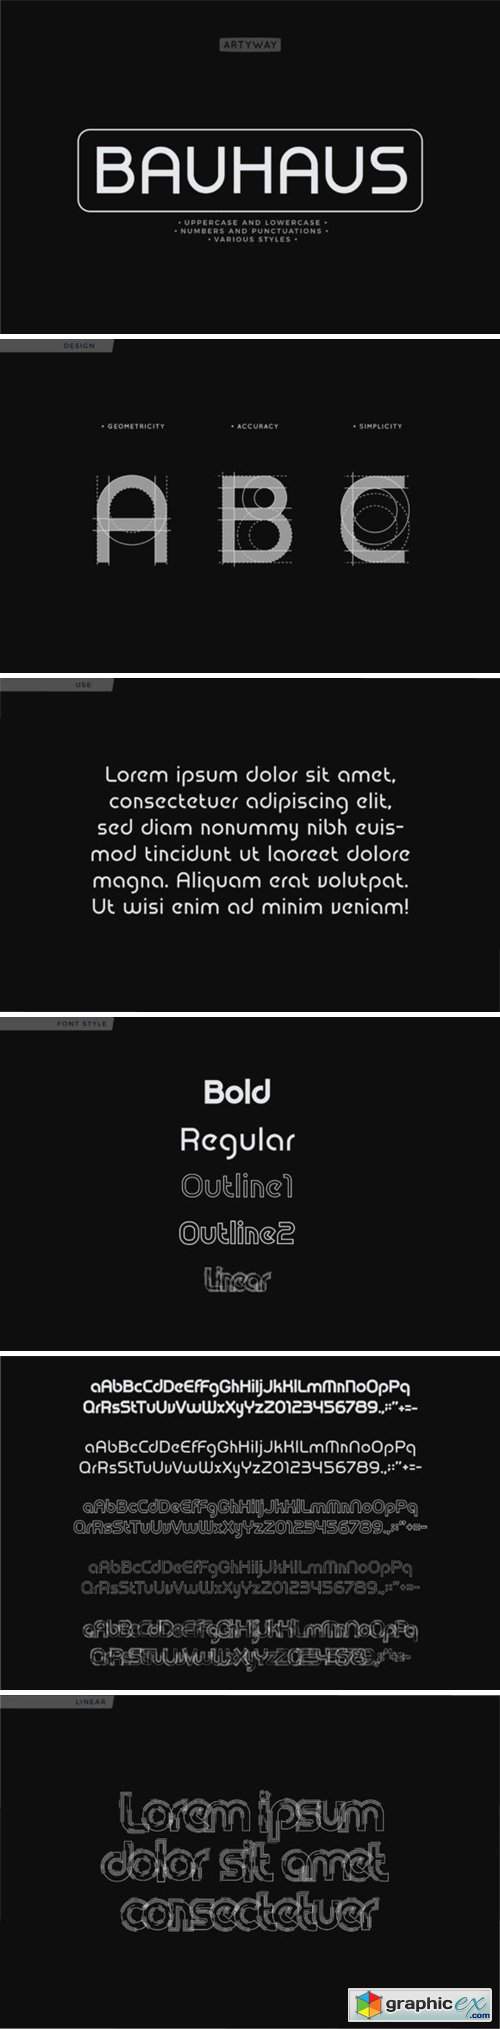 bauhaus fonts adobe